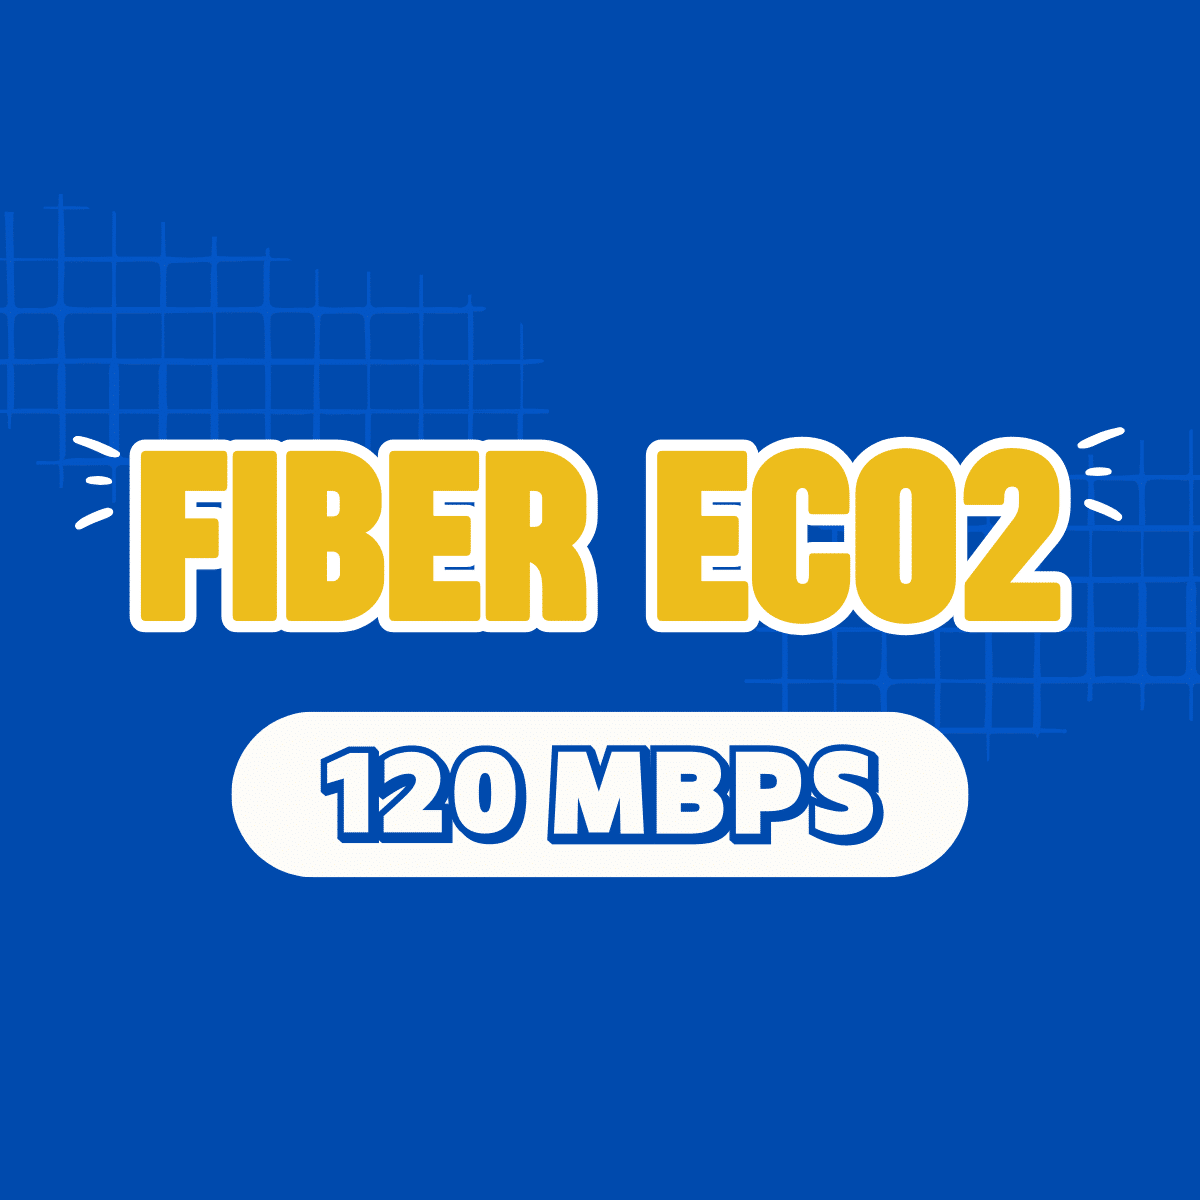 Fiber Eco 2, fibereco2